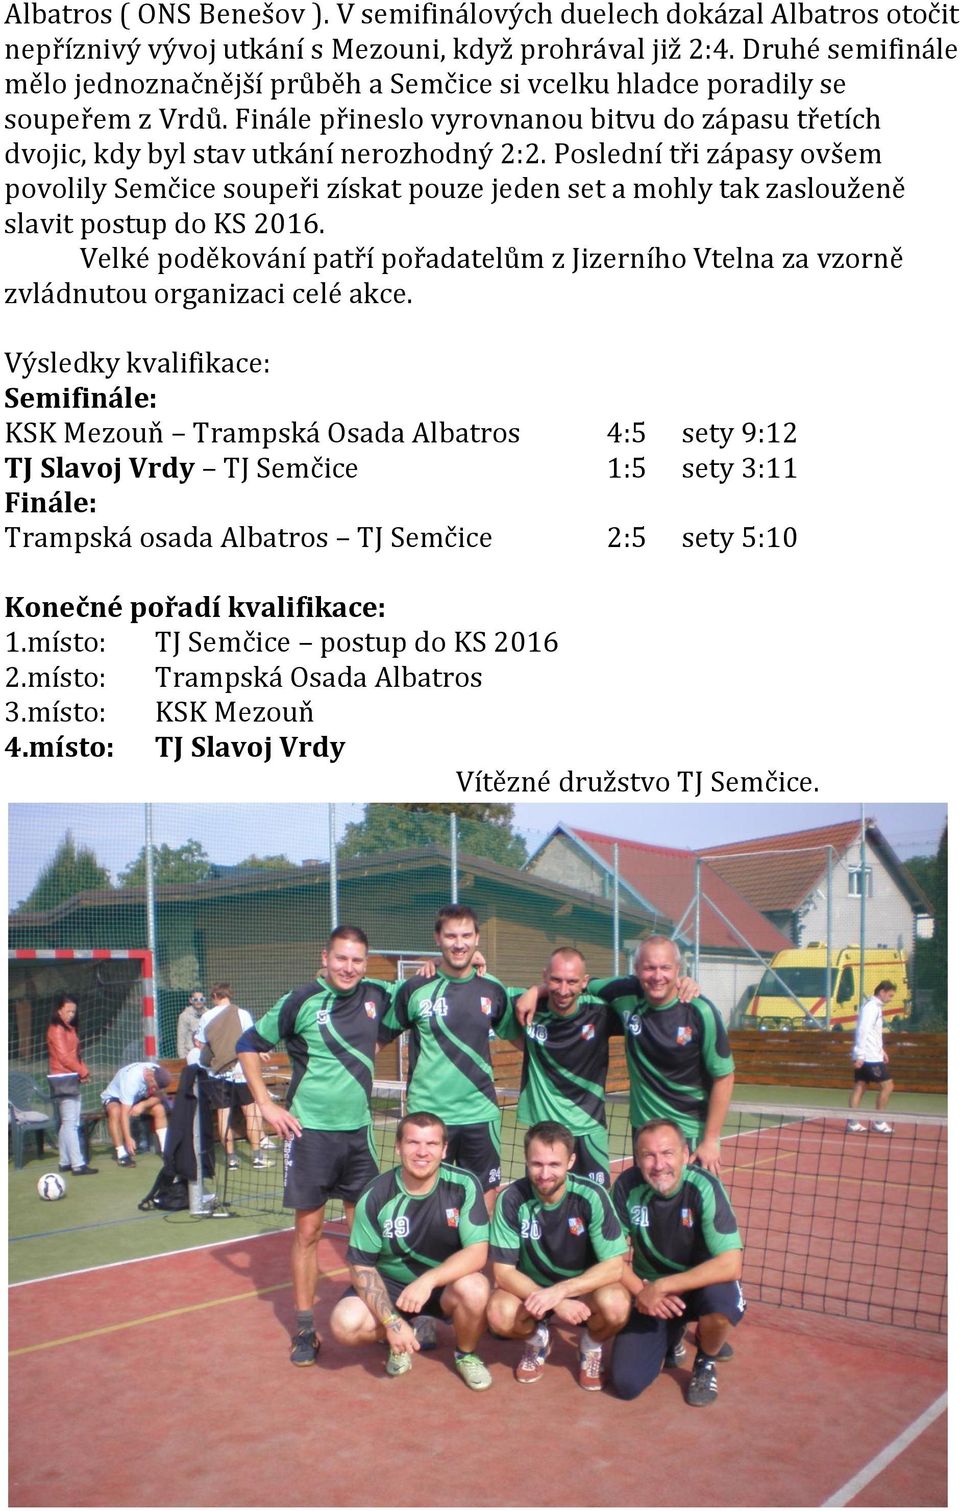 Poslední tři zápasy ovšem povolily Semčice soupeři získat pouze jeden set a mohly tak zaslouženě slavit postup do KS 2016.